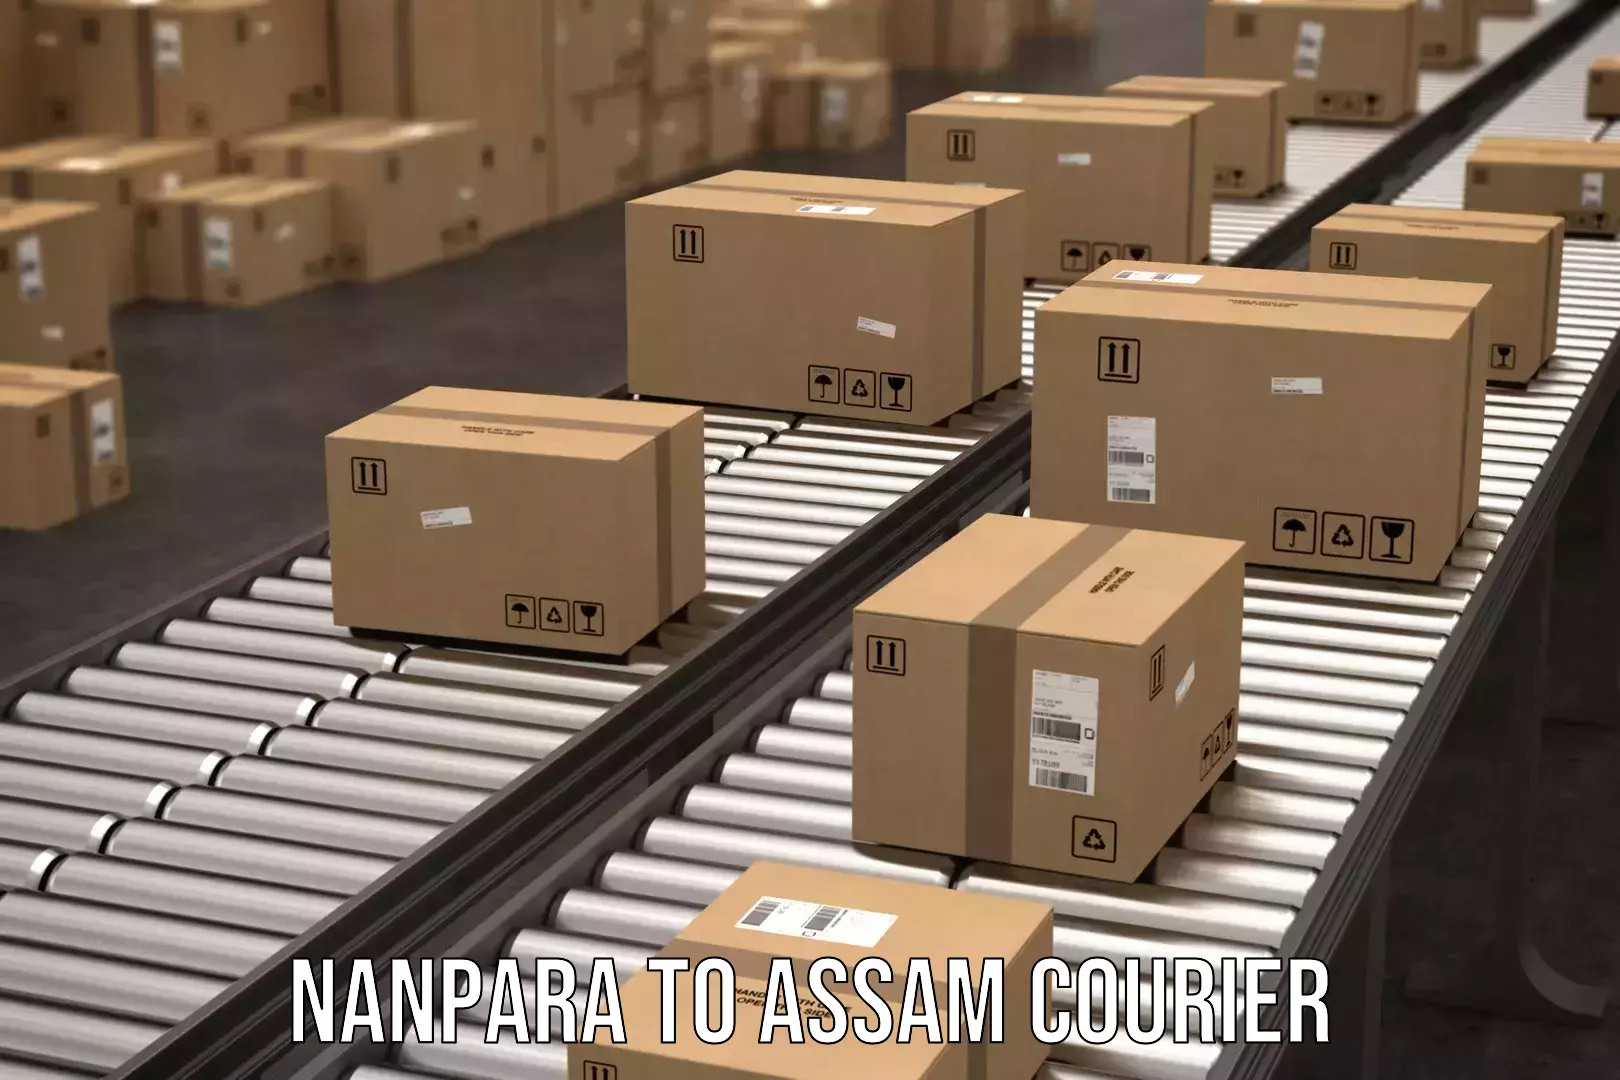 High-capacity shipping options Nanpara to Silchar